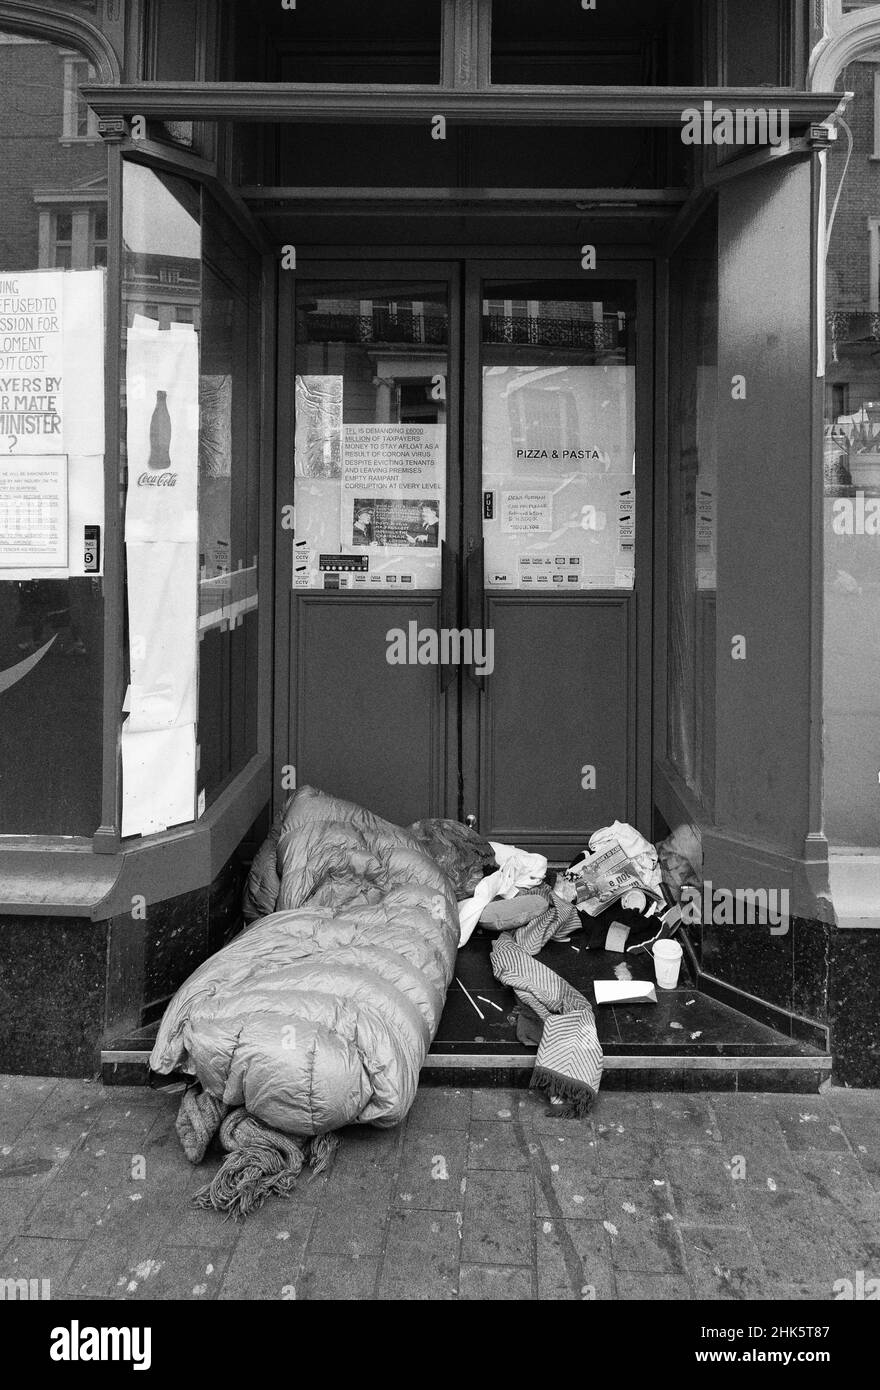 Sans-abri Royaume-Uni; une personne dormant dans une orée, South Kensington, Londres Royaume-Uni; sans-abri Londres Grande-Bretagne en raison de la pauvreté Royaume-Uni. Banque D'Images